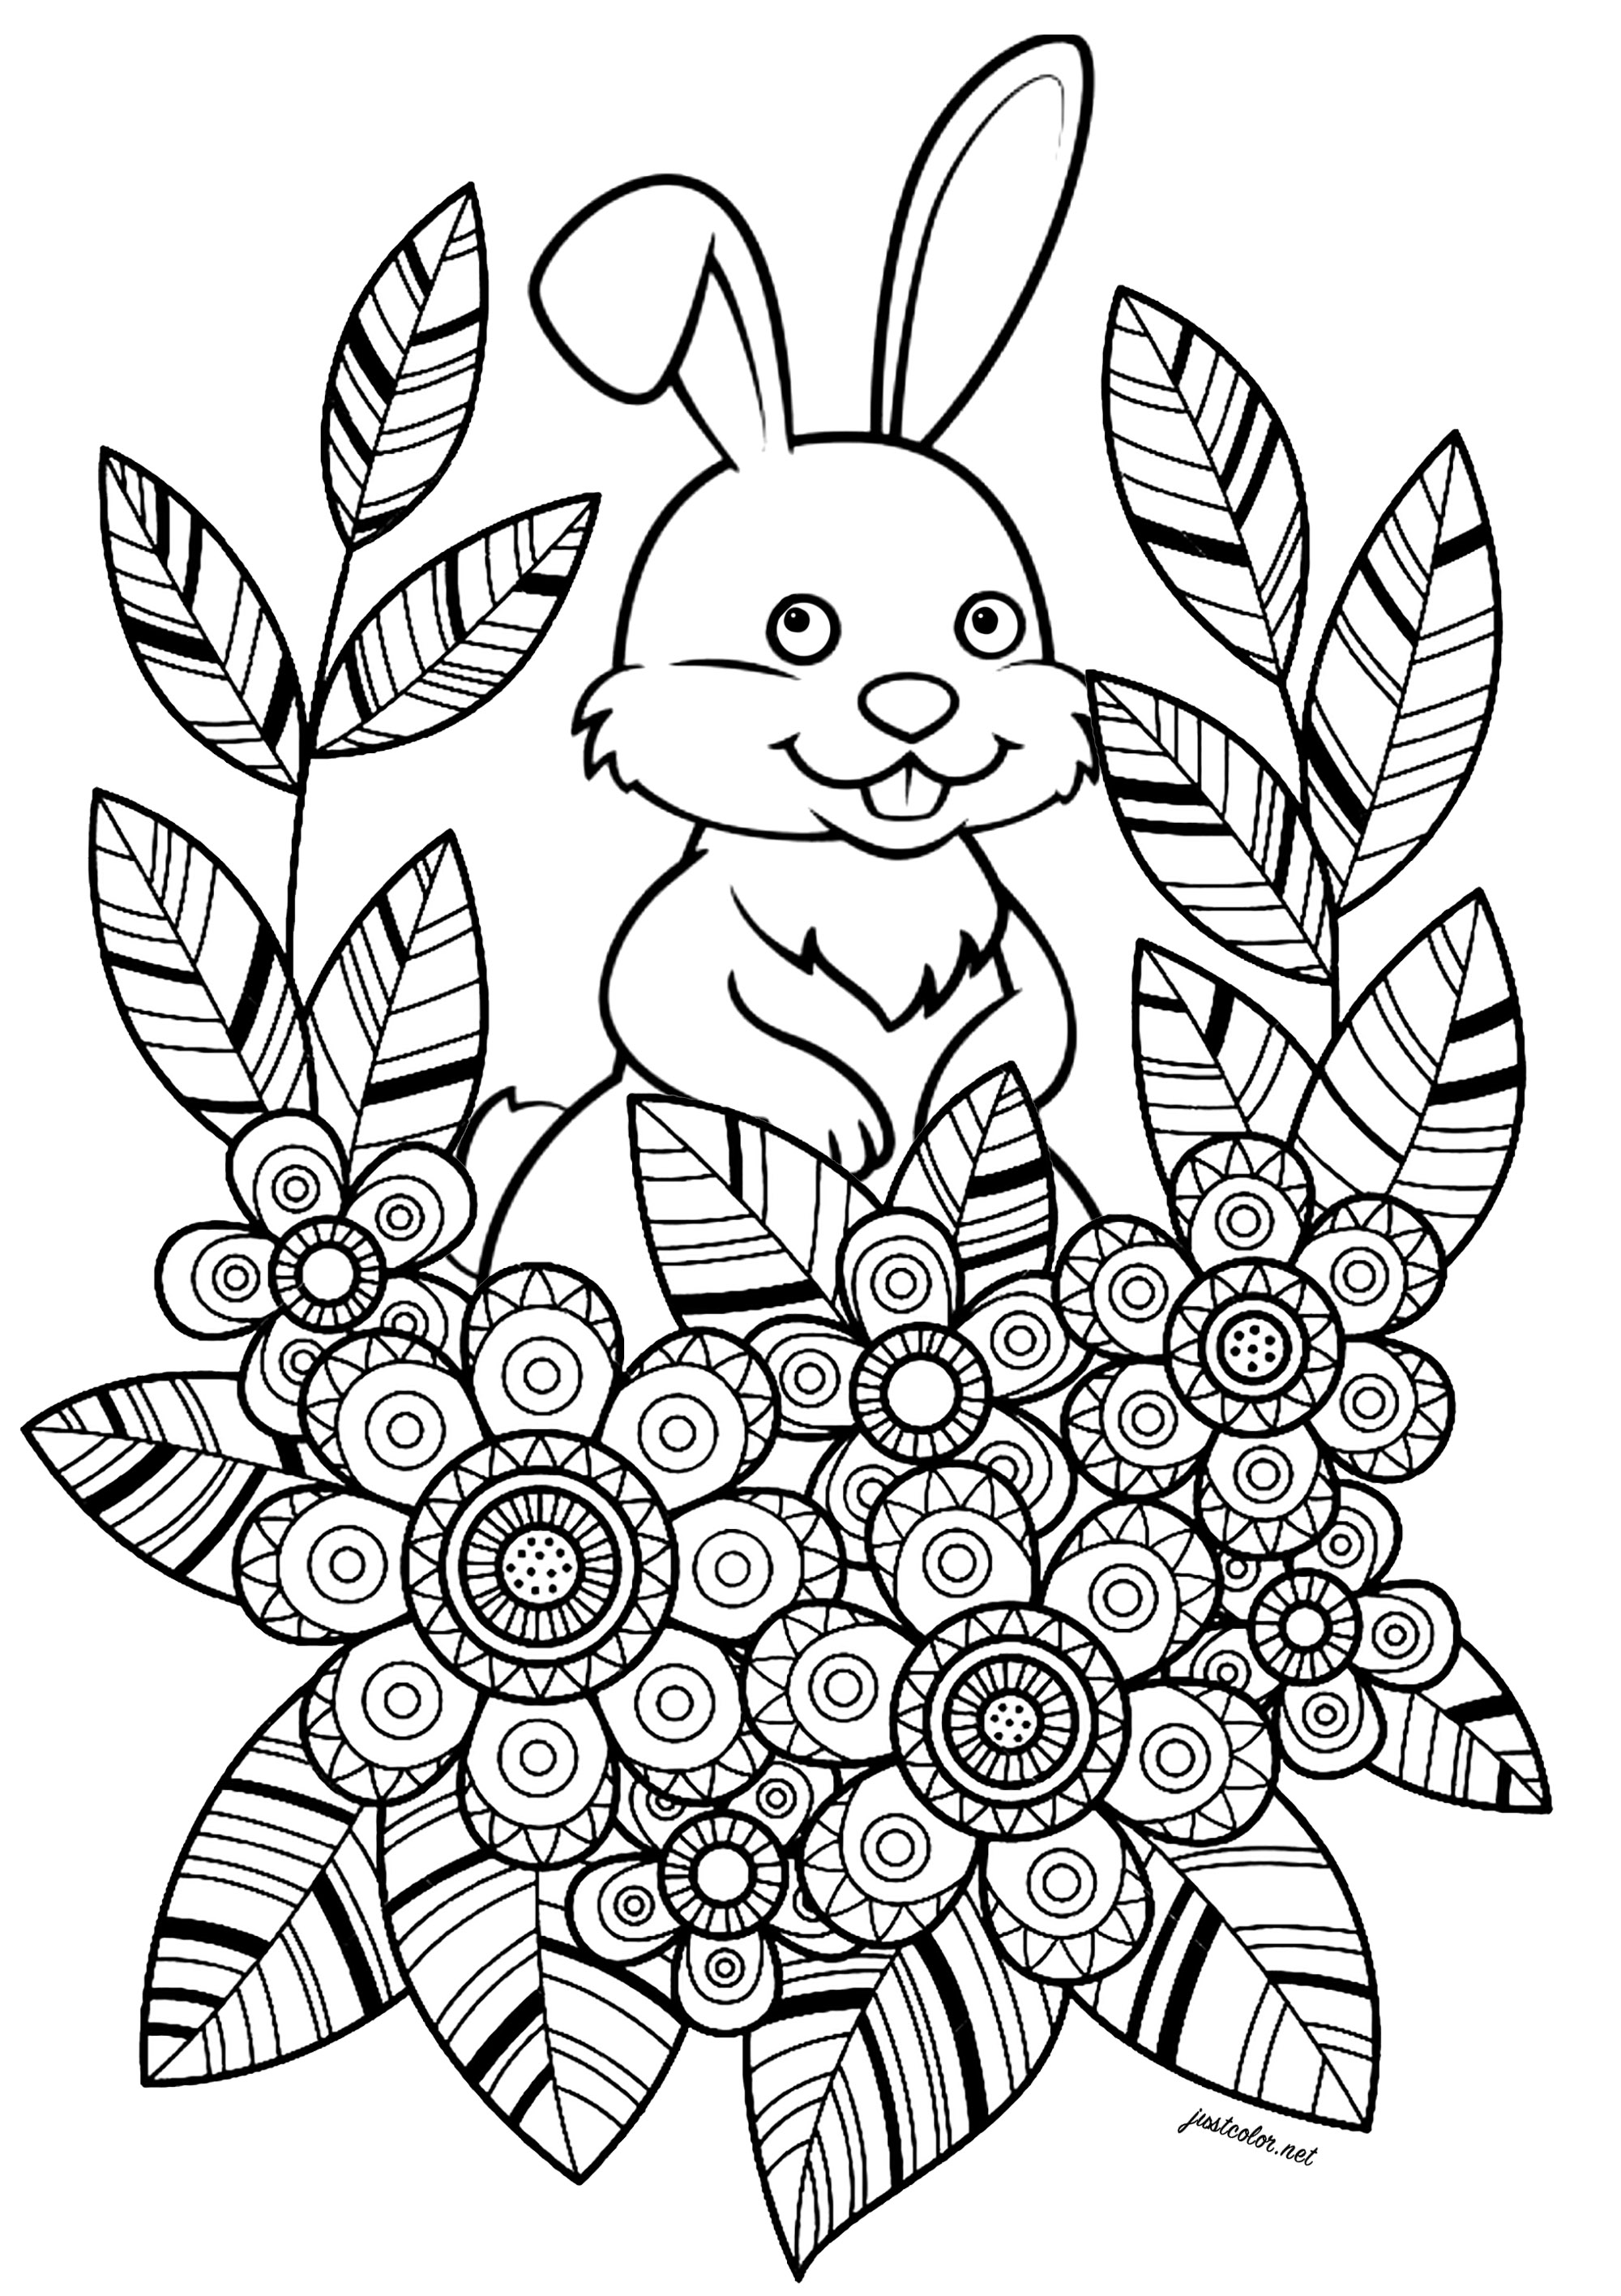 Lapin avec fleurs et feuilles à jolis motifs. Ce coloriage simple et charmant représente un lapin blanc qui se cache derrière des fleurs et des feuilles. Les fleurs et feuilles sont dessinées dans un style très adapté au coloriage, avec des zones bien délimitées et des jolis motifs